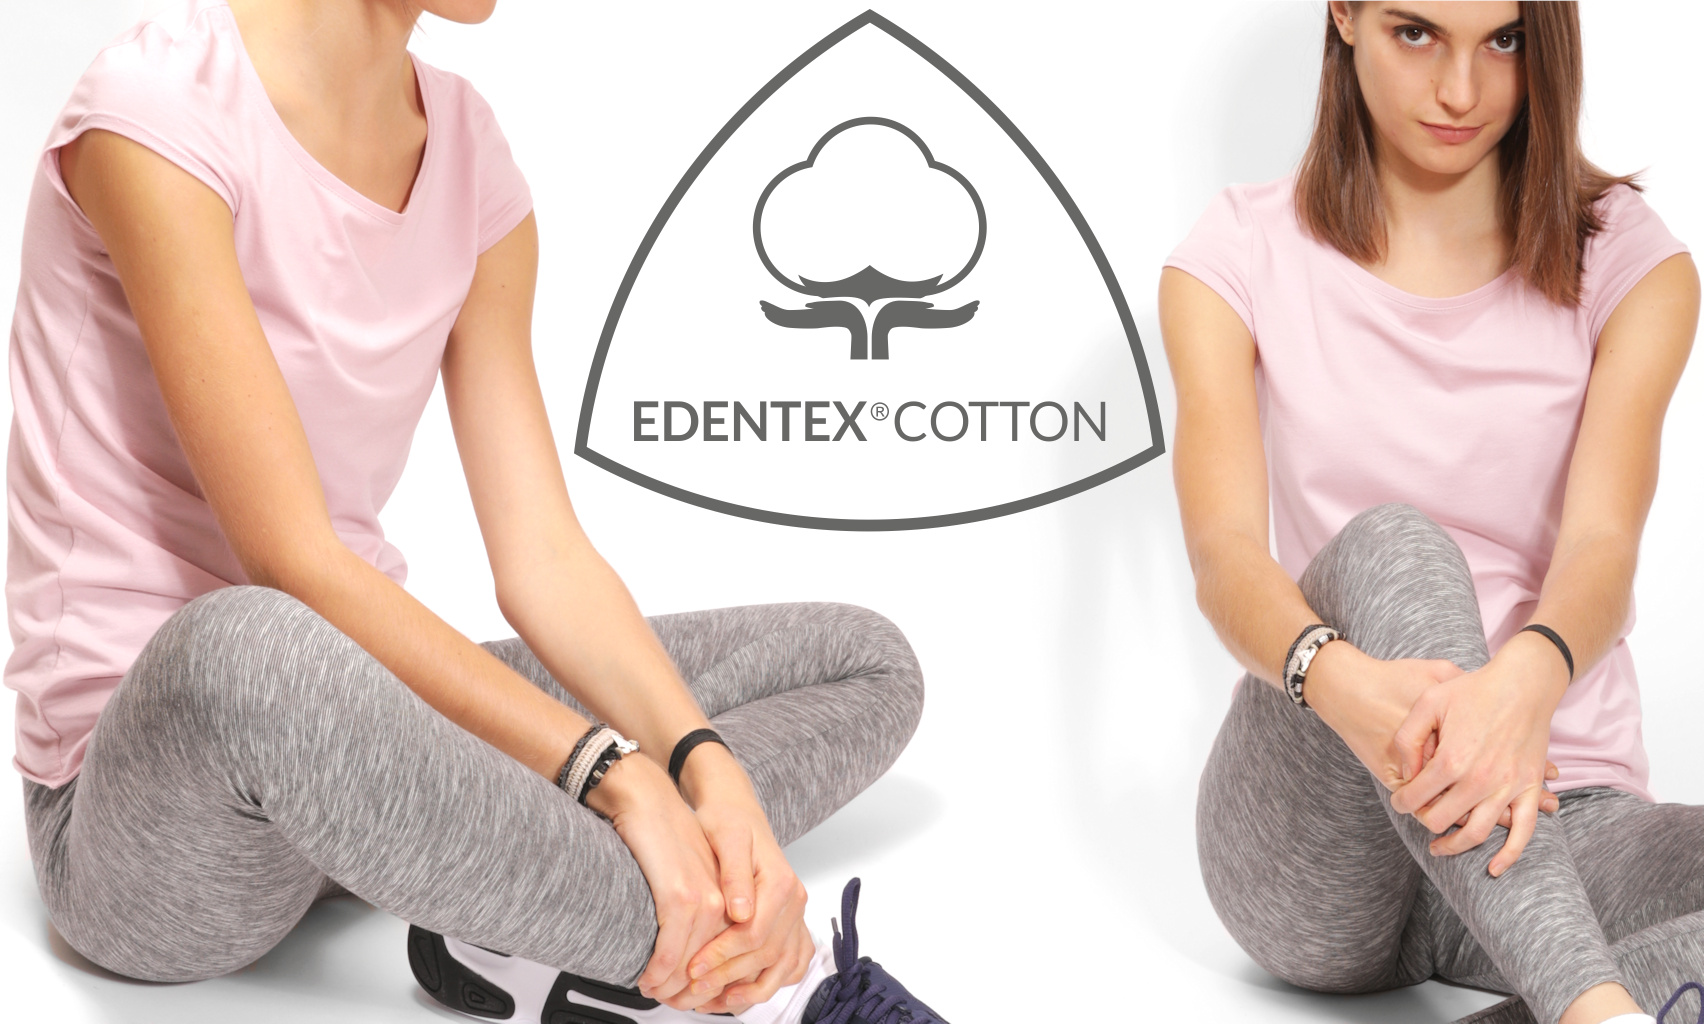 EDENTEX®COTTON: Doskonała elastyczność